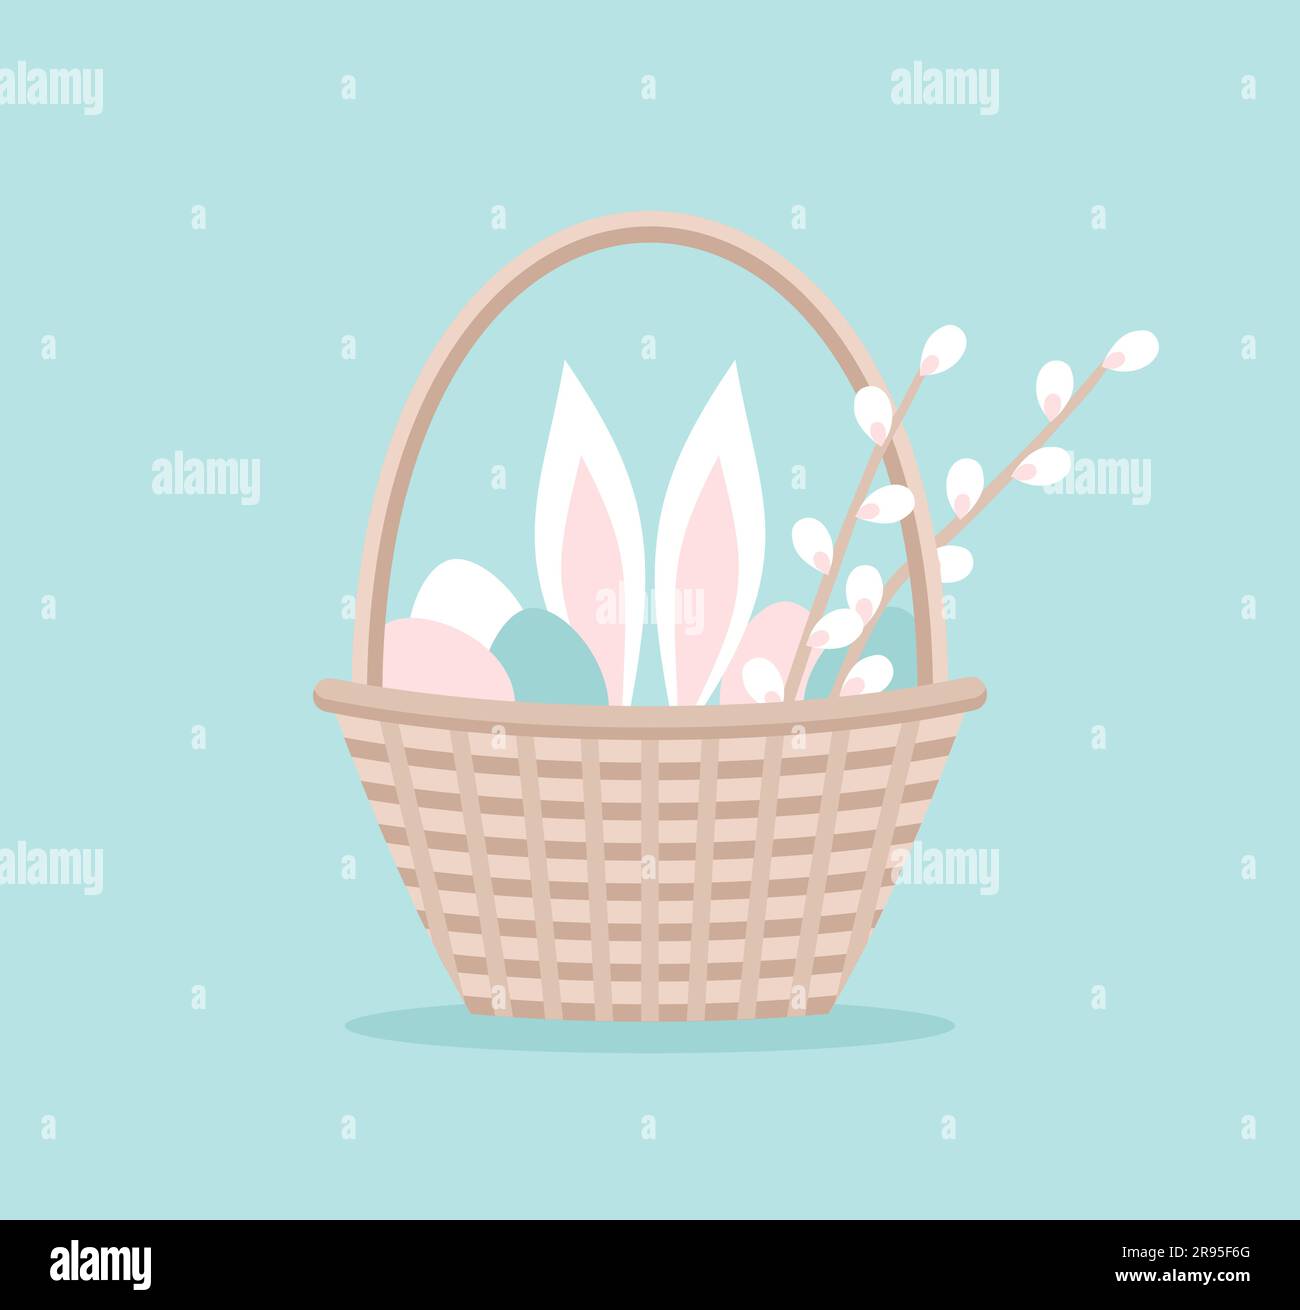 Cesta de Pascua con huevos, orejas de conejo y ramas de flor de sauce. Ilustración vectorial en estilo plano Ilustración del Vector